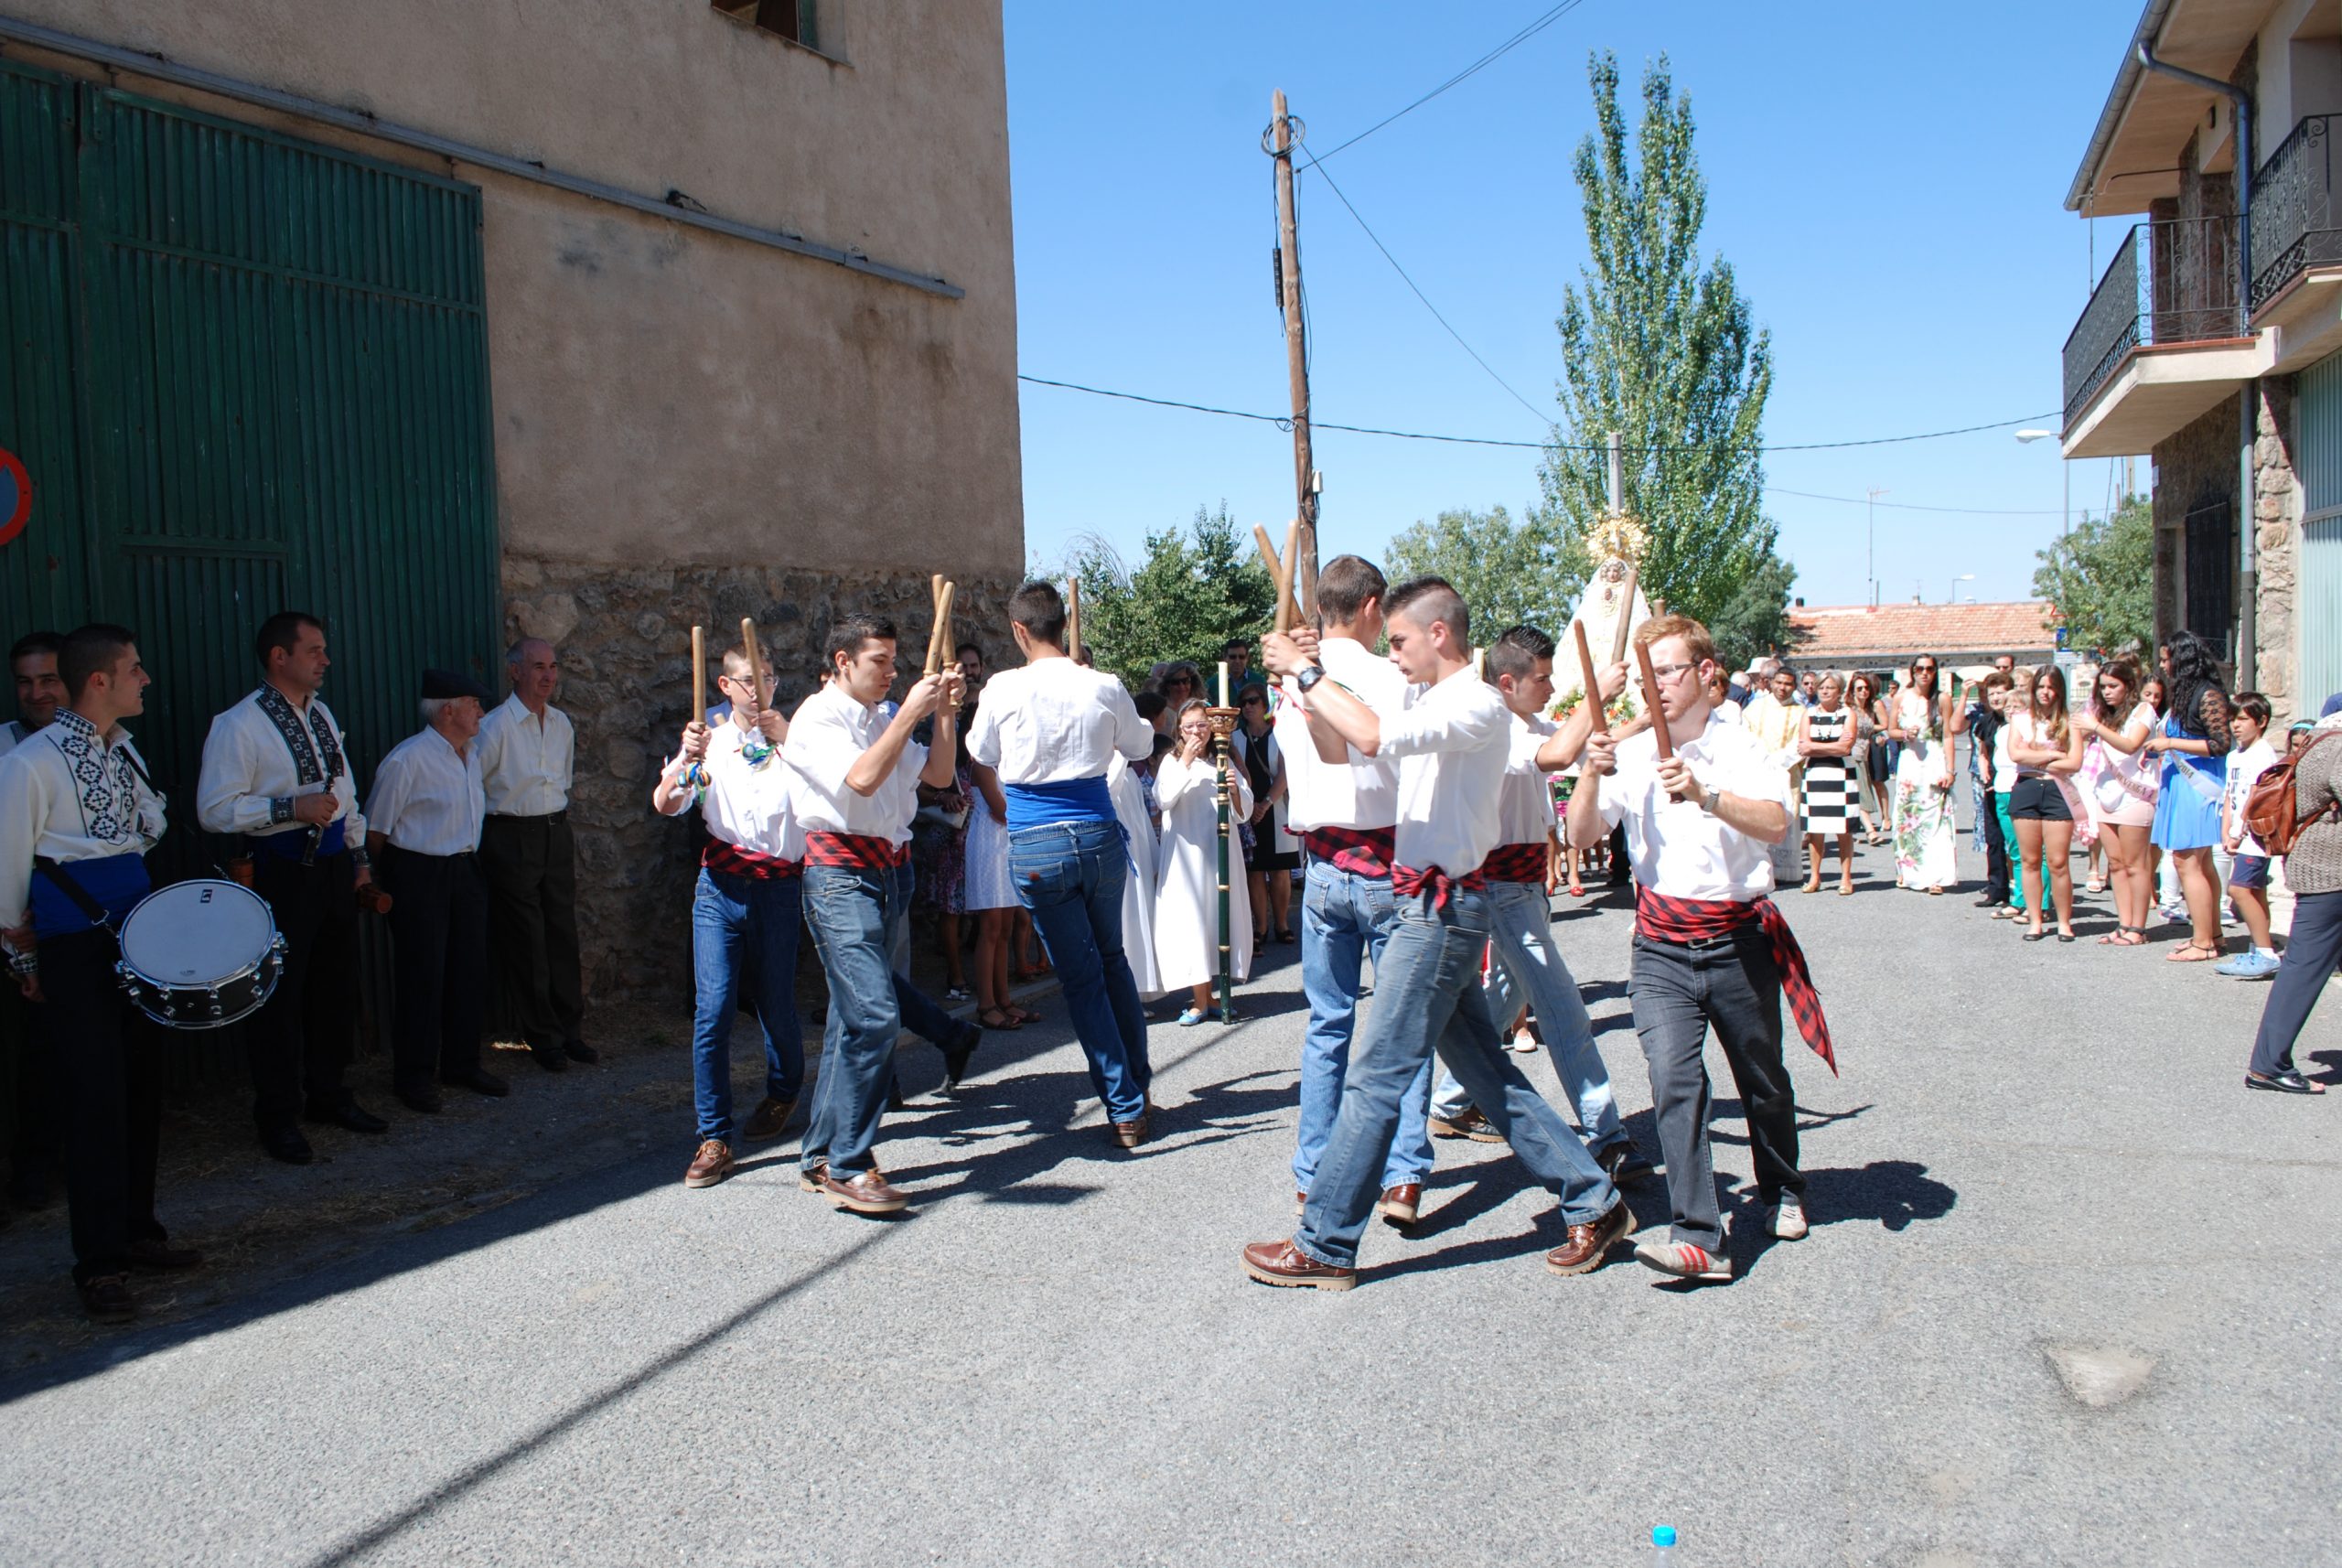 02 Danzantes en el Paloteo La Zarza. Revenga, Segovia